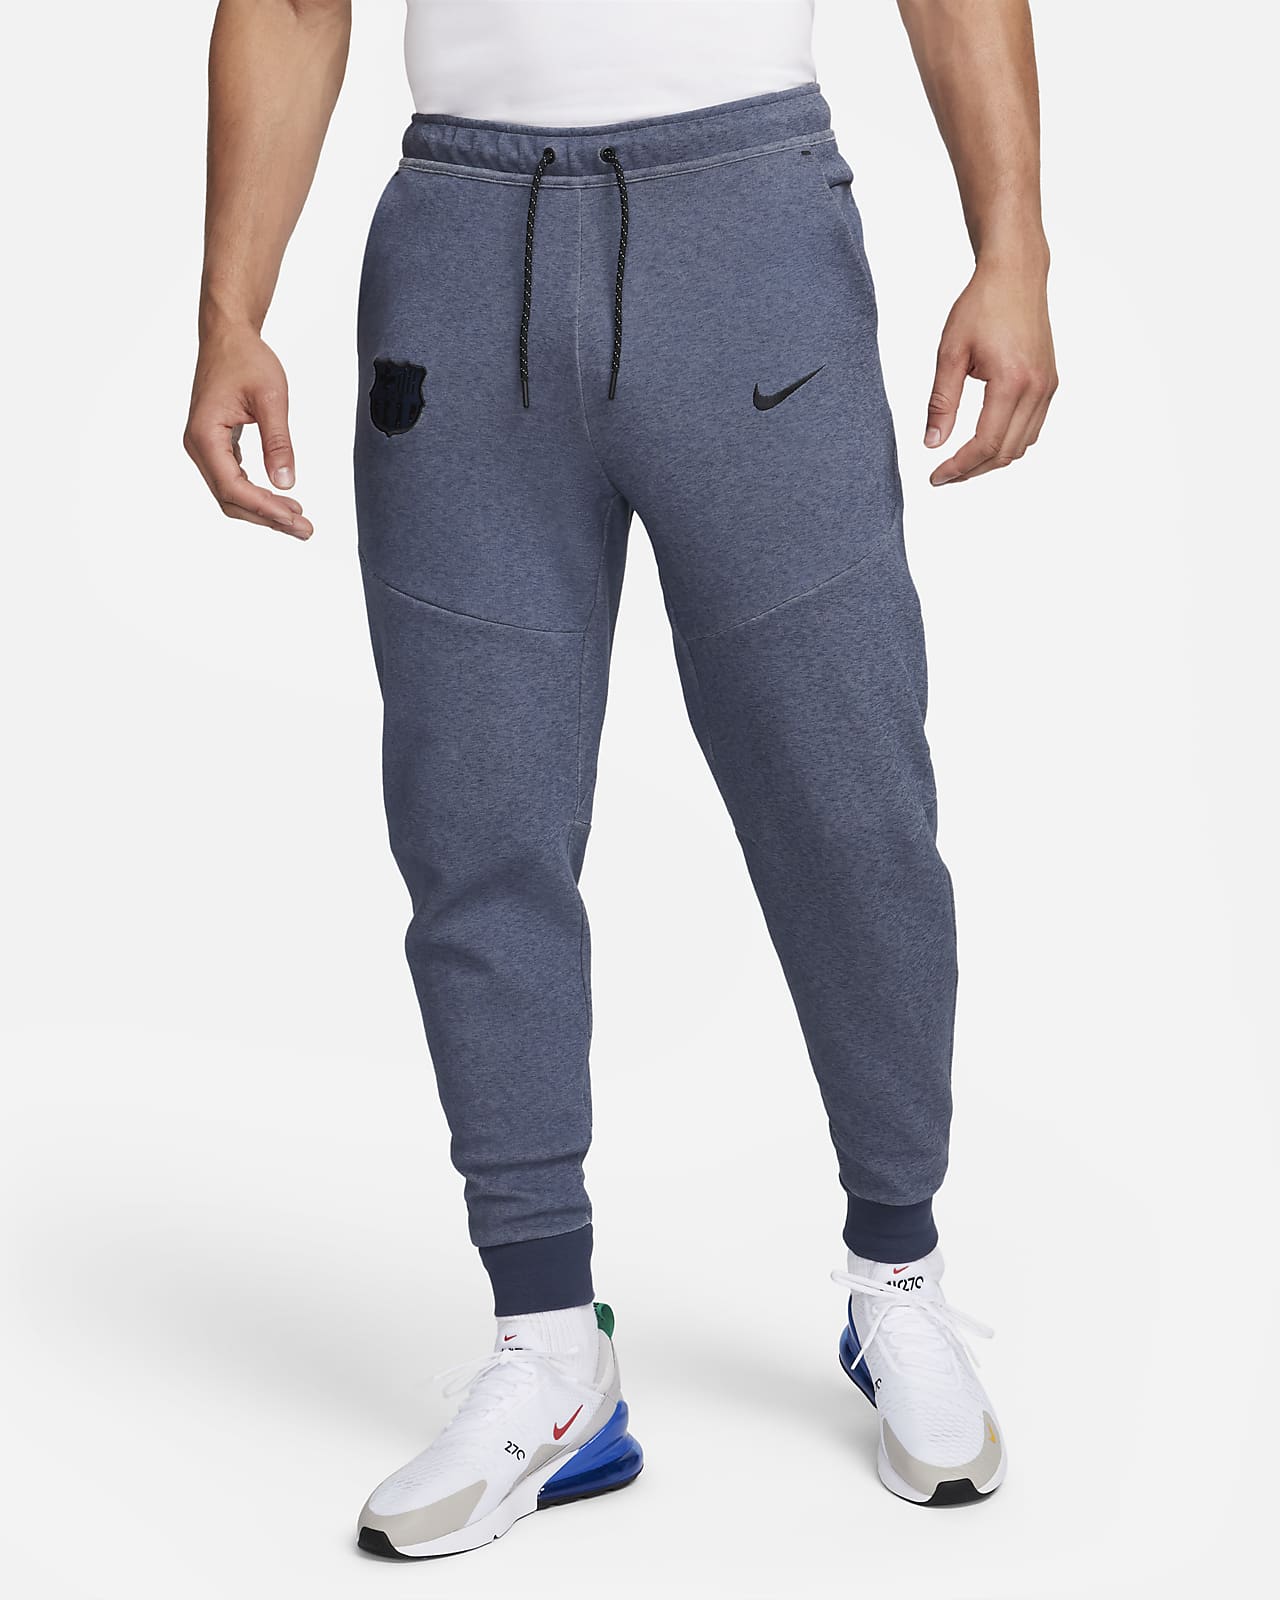 Ανδρικό ποδοσφαιρικό παντελόνι φόρμας Nike εναλλακτικής εμφάνισης Μπαρτσελόνα Tech Fleece